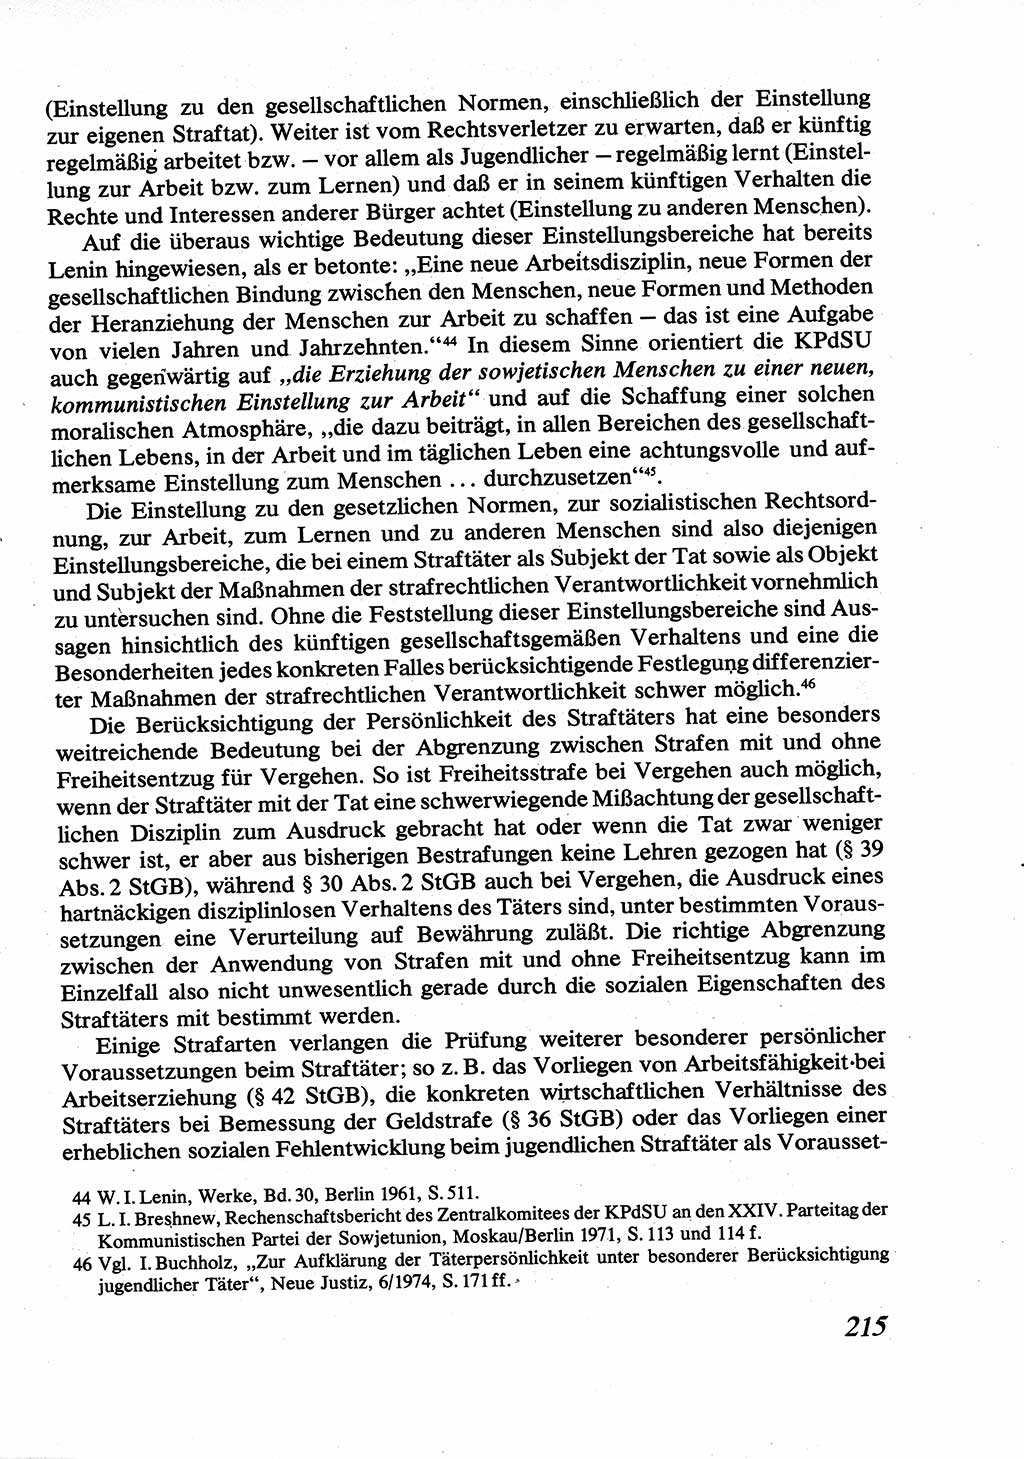 Strafrecht [Deutsche Demokratische Republik (DDR)], Allgemeiner Teil, Lehrbuch 1976, Seite 215 (Strafr. DDR AT Lb. 1976, S. 215)